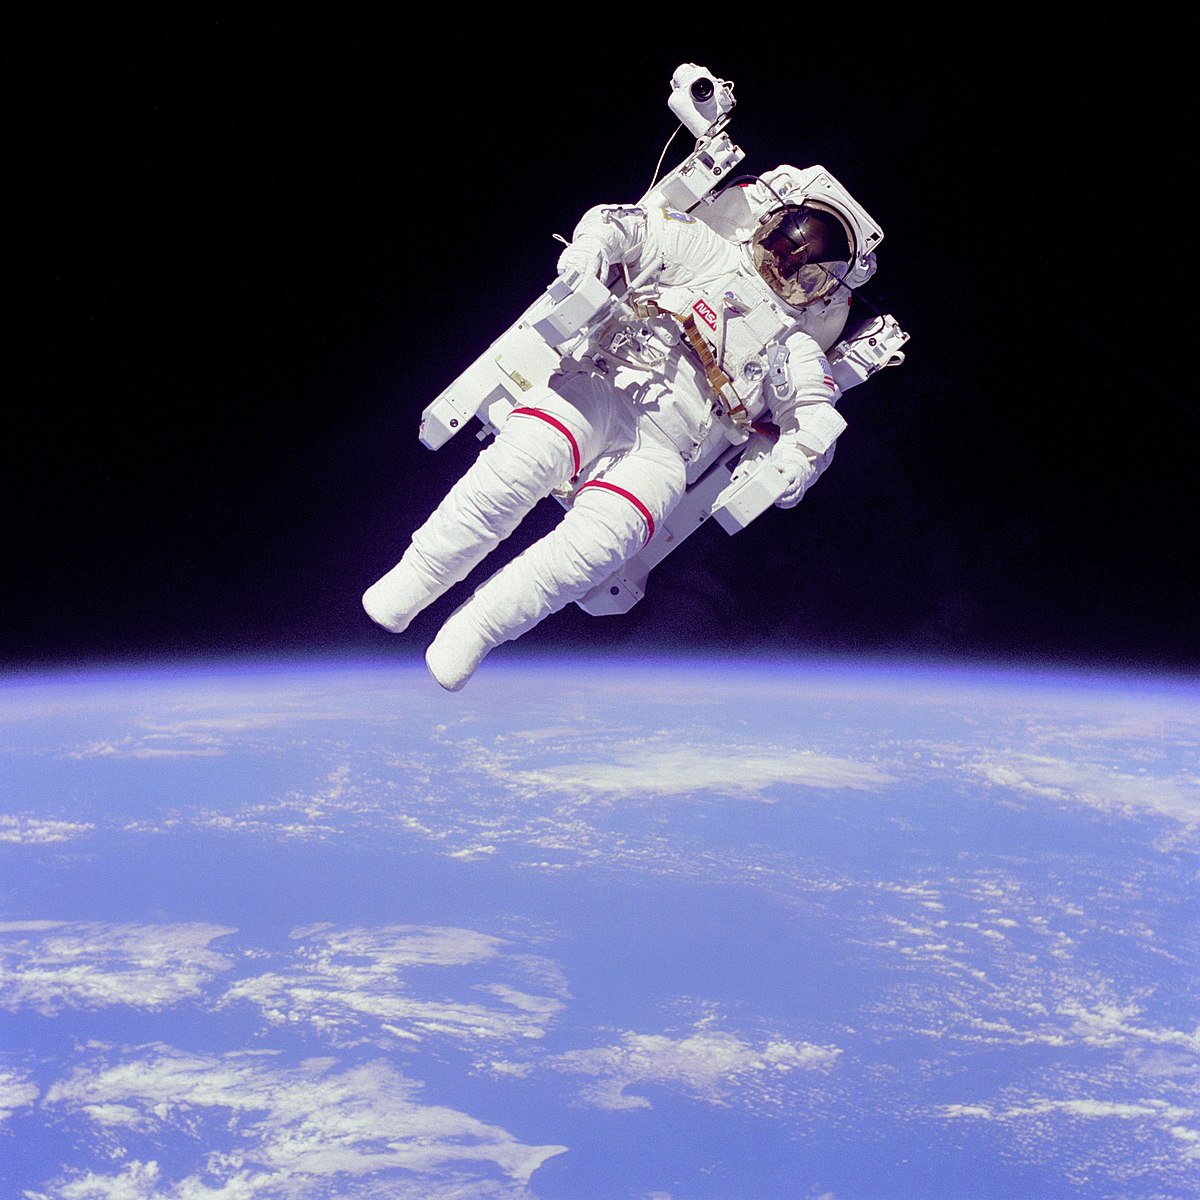 एक वर्षपछि अमेरिकी महिला अन्तरिक्ष यात्री पृथ्वीमा अवतरण